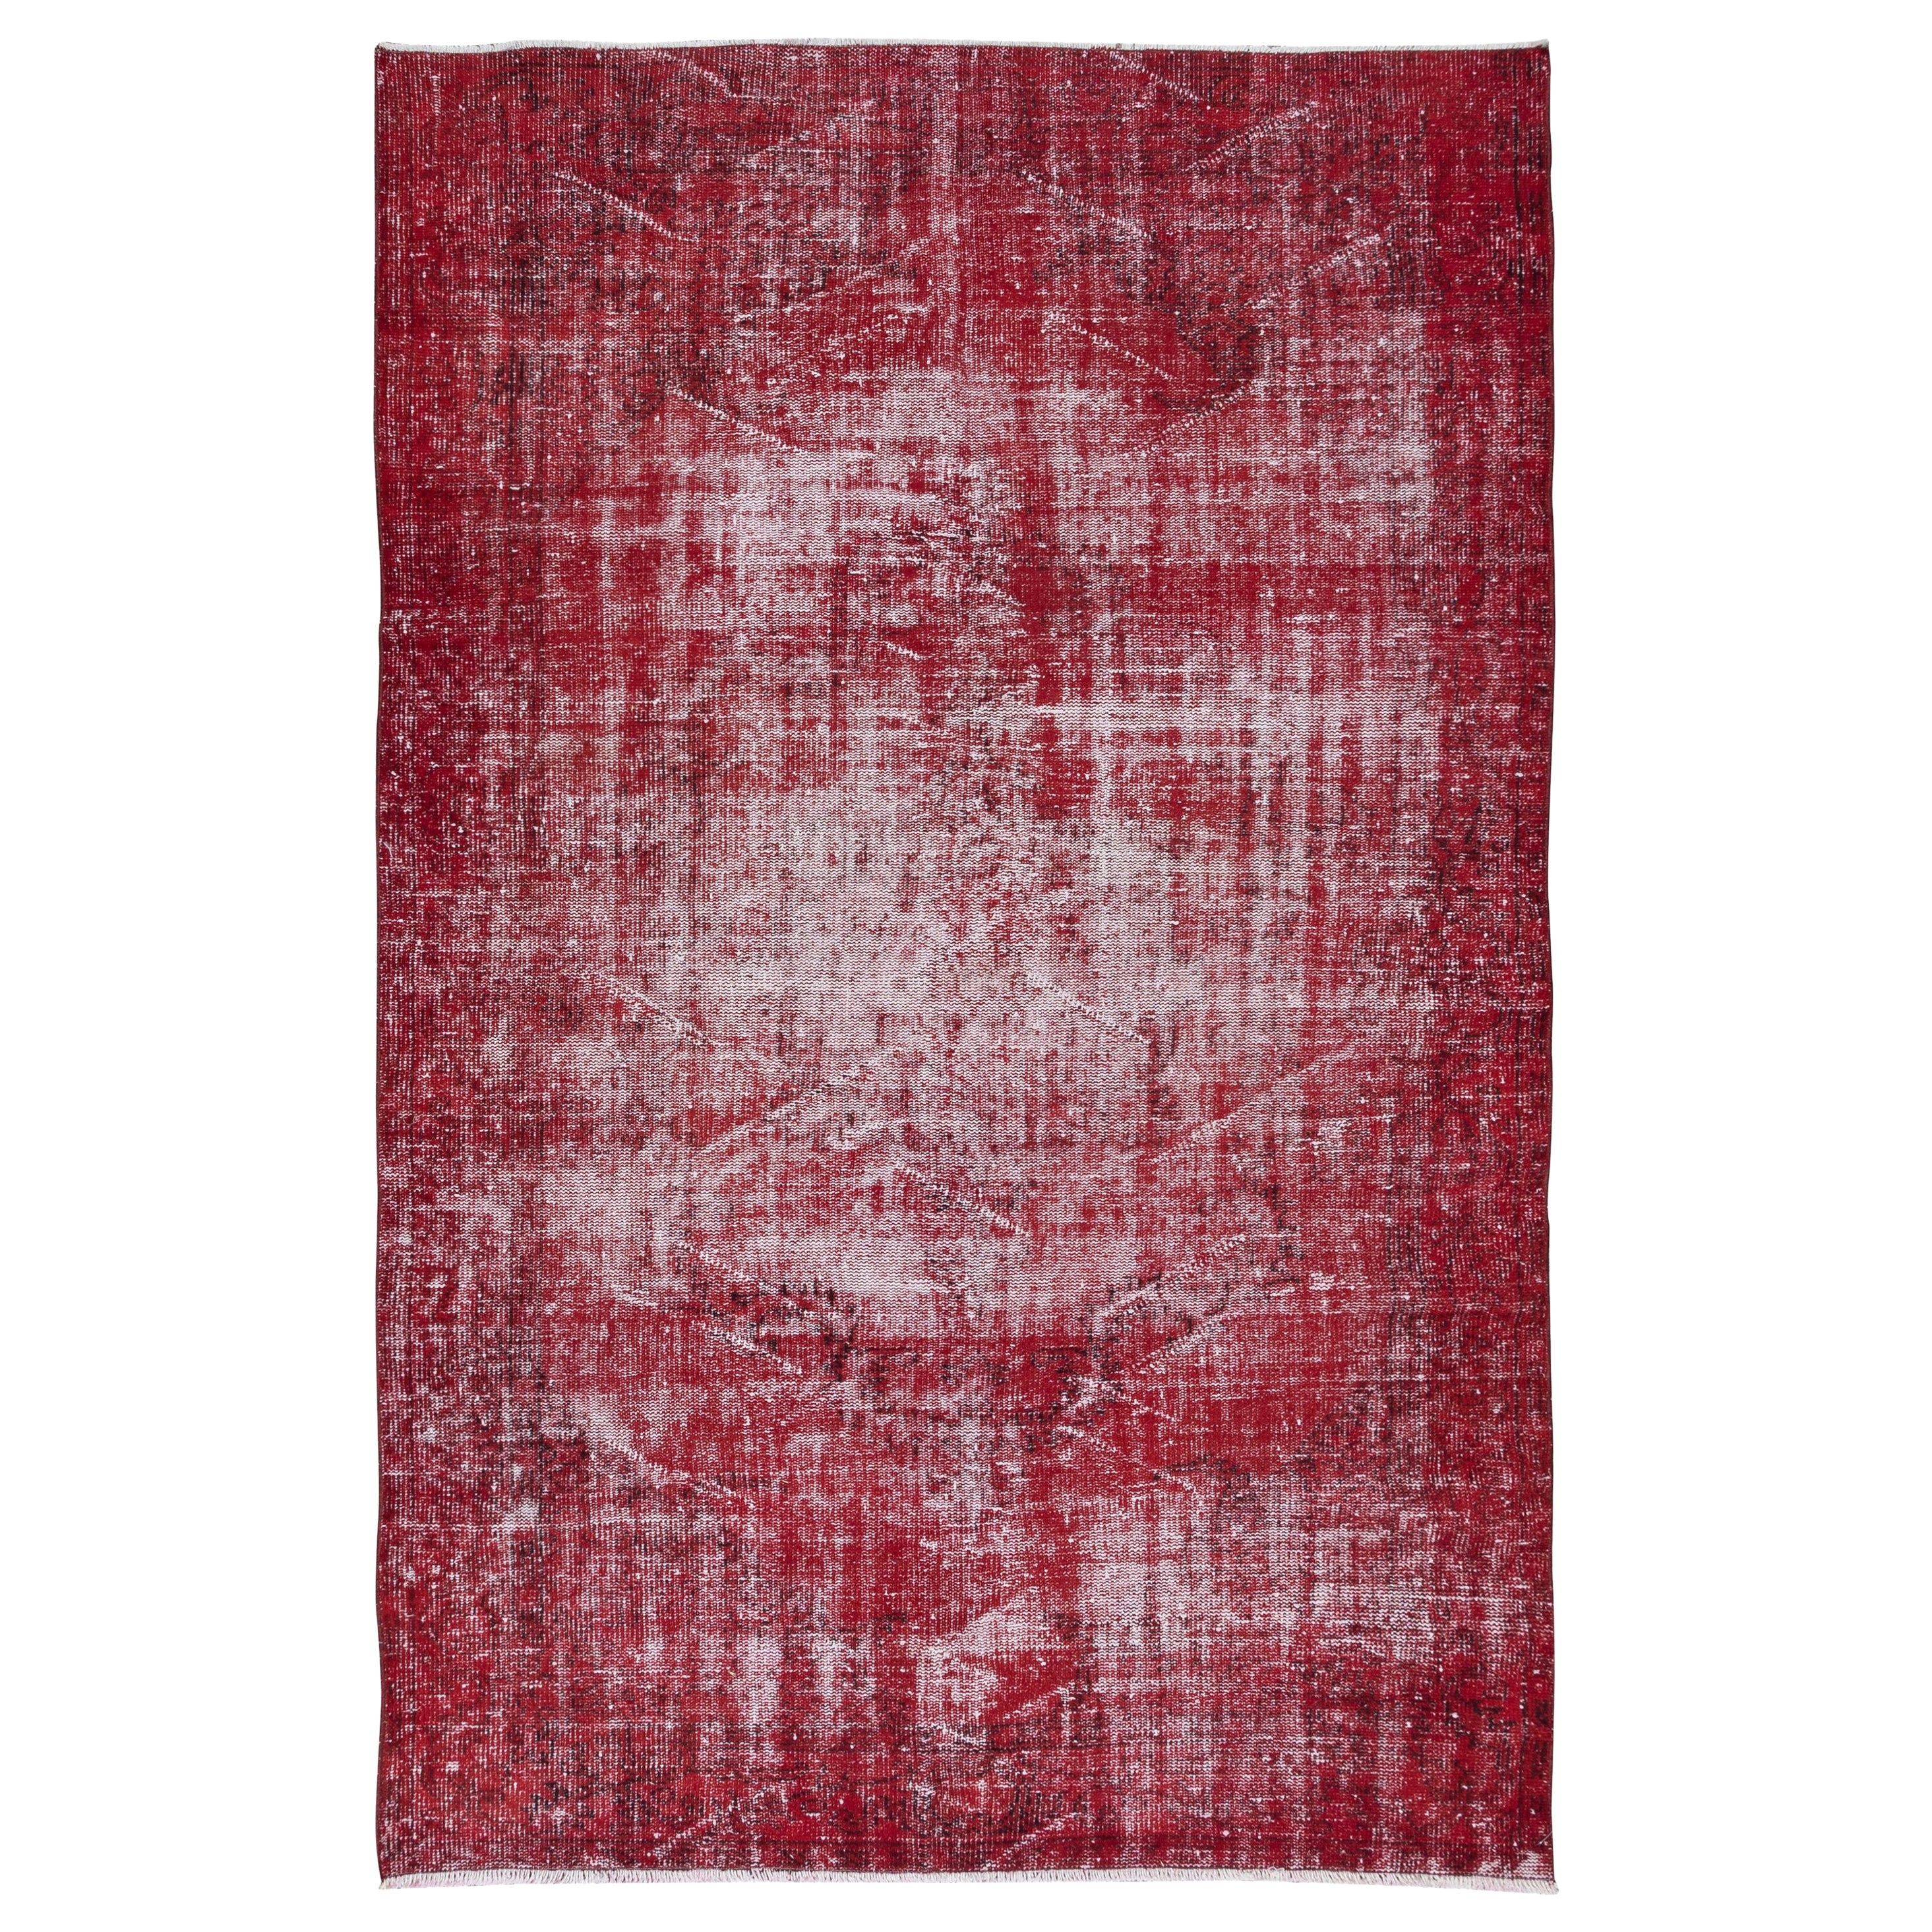 5.8x9 Ft Distressed Türkischer handgefertigter Teppich in Rot, ideal für moderne Innenräume